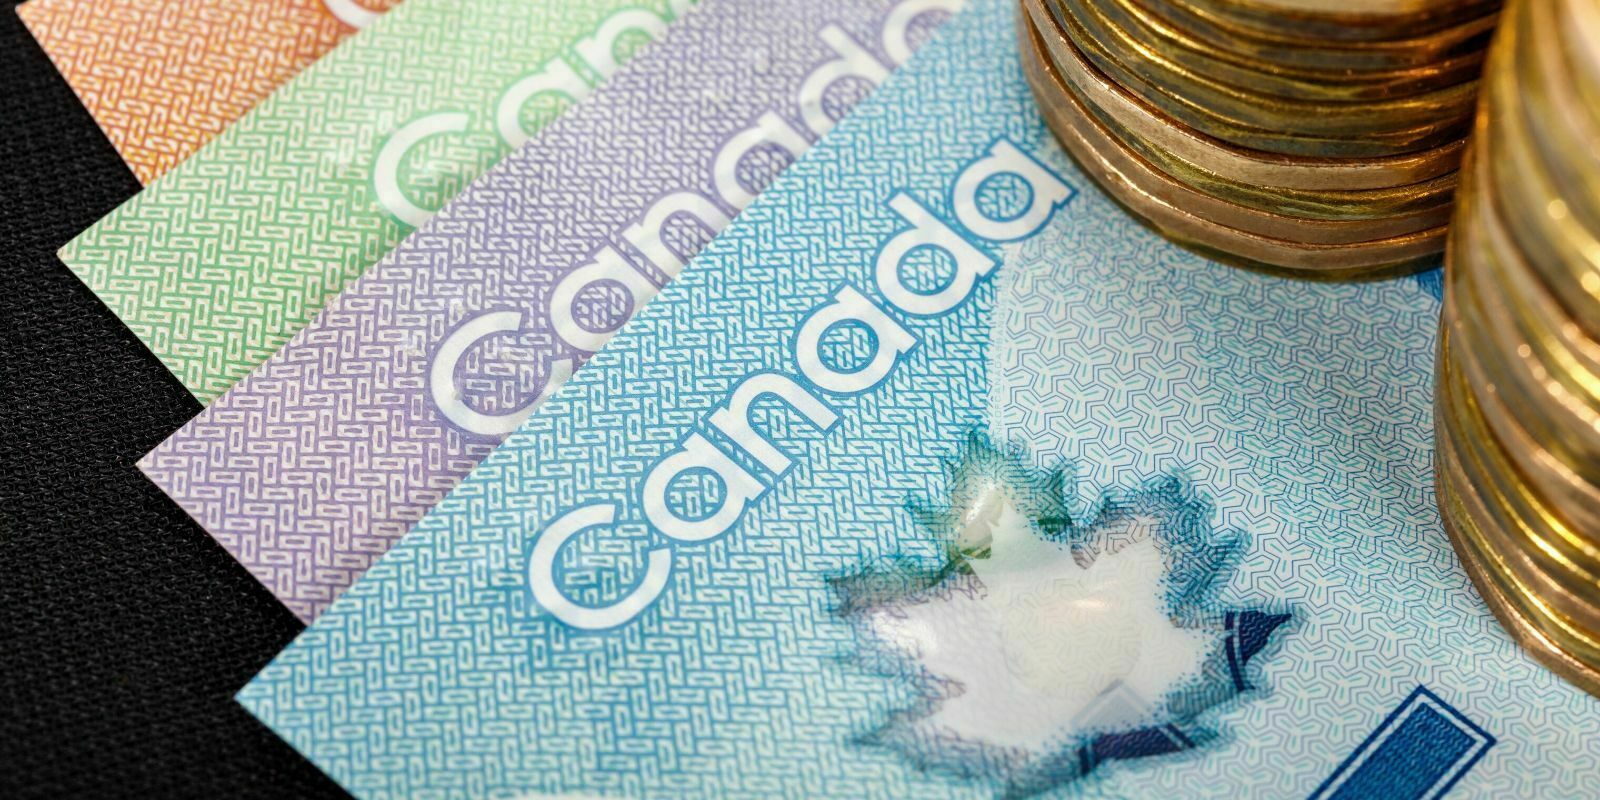 Stablecorp dévoile le QCAD, un stablecoin indexé au dollar canadien